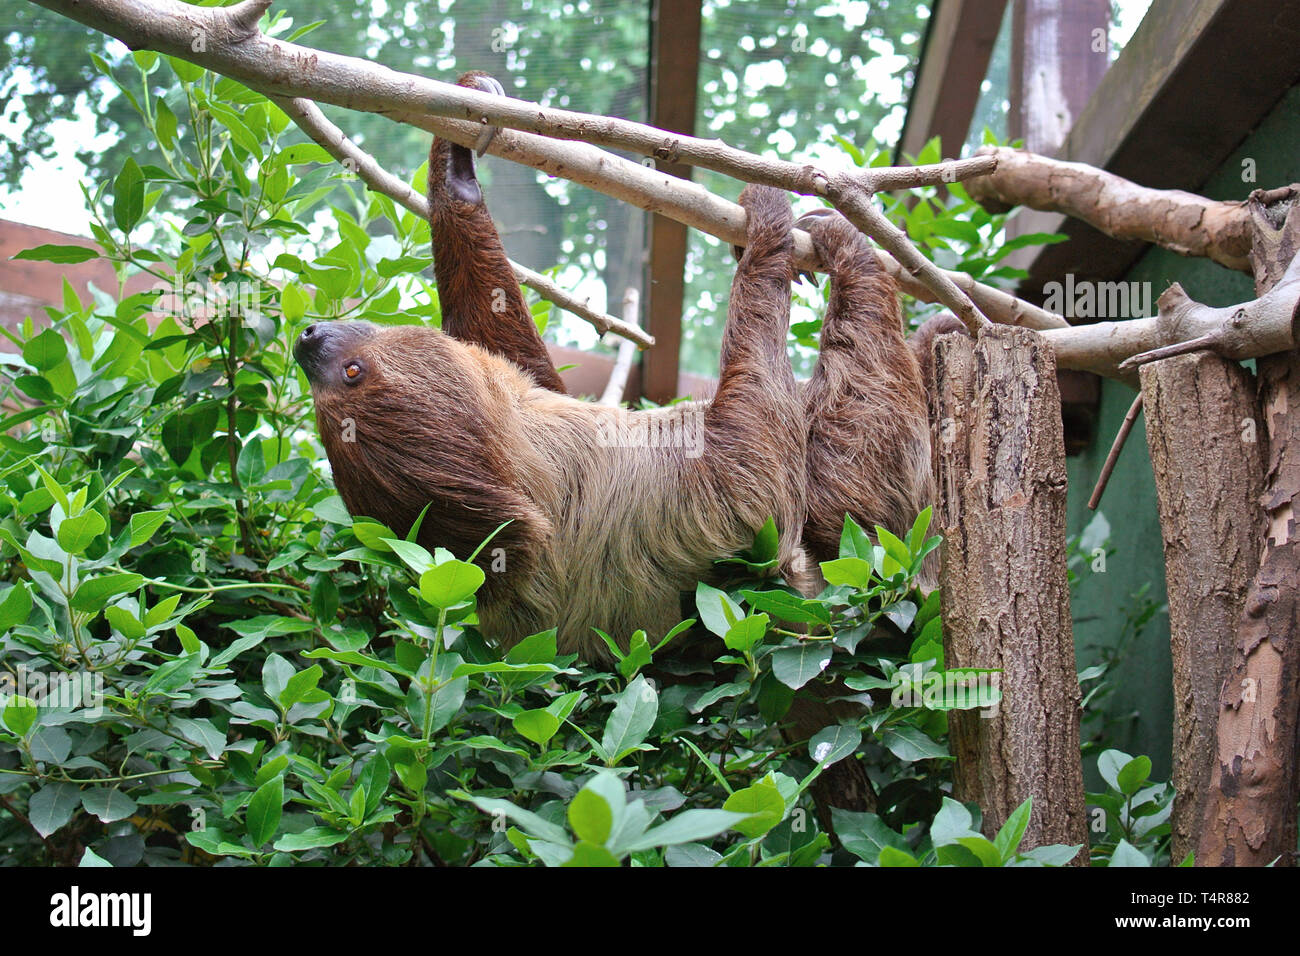 Choloepus Didactylus zwei-toed Sloth Tier kopfüber Klettern auf Hanging Tree Branch Stockfoto